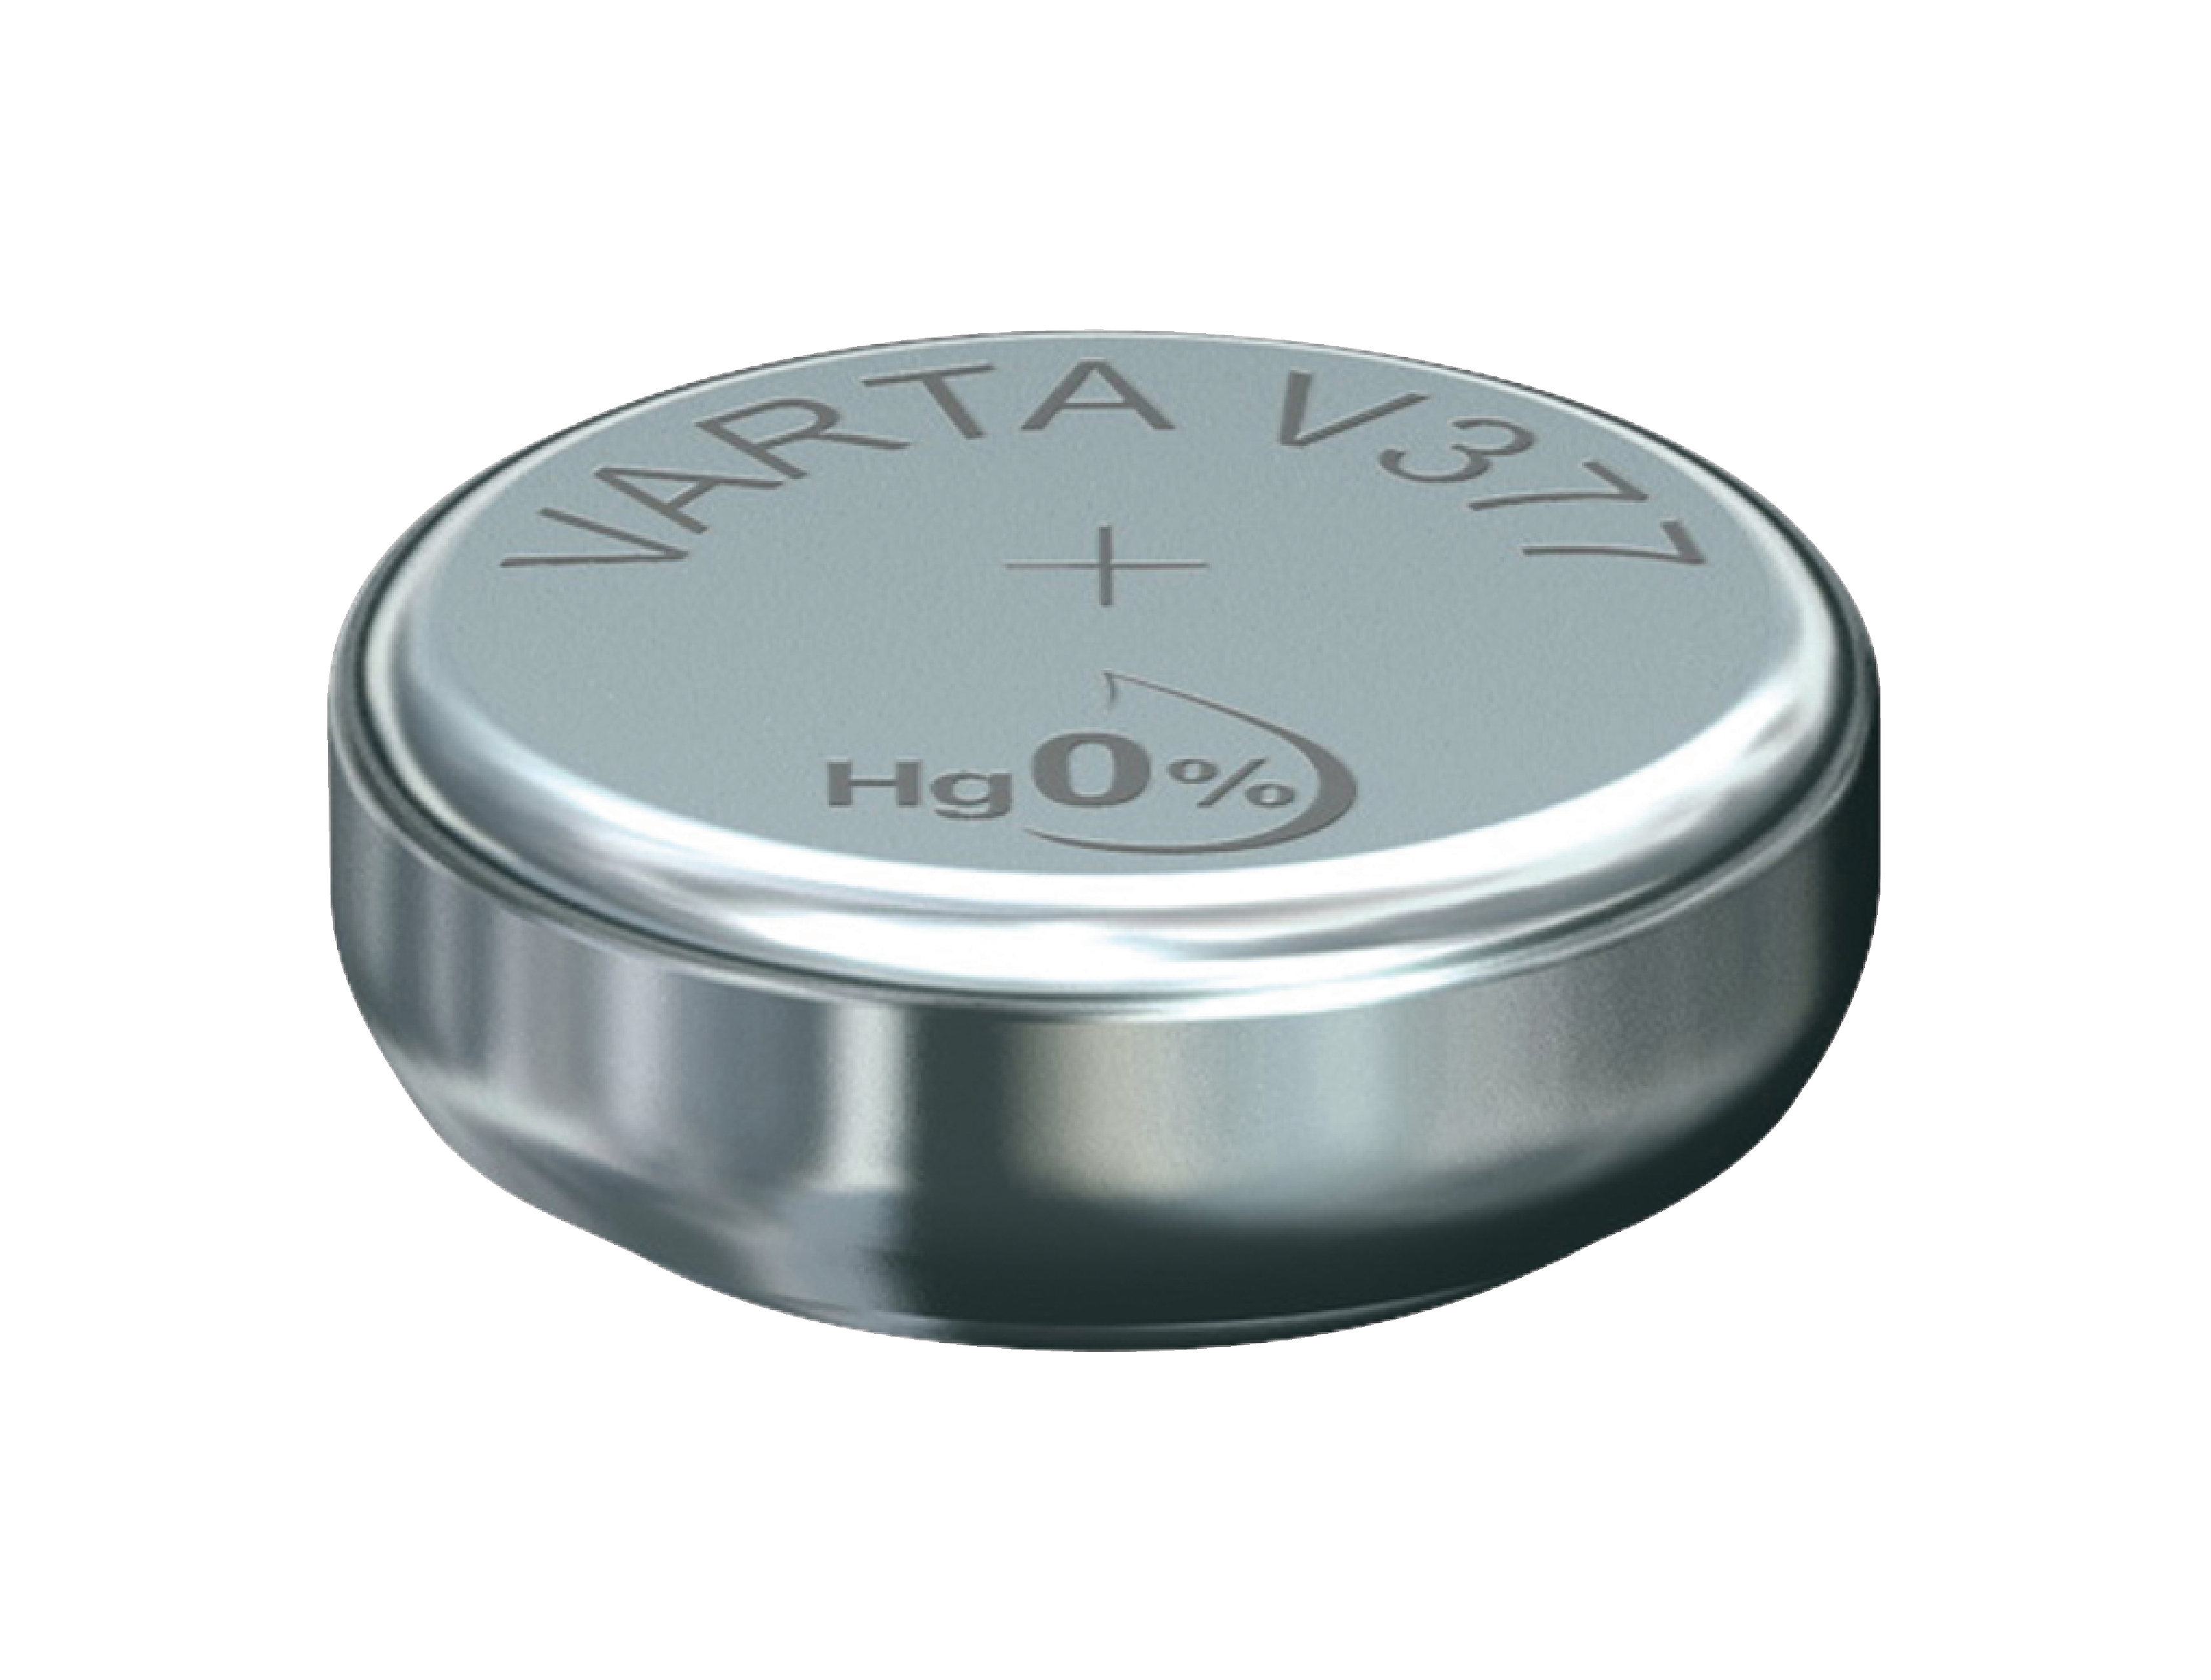 Stříbro-oxidová hodinková baterie SR66/V377 1.55 V 27 mAh, VARTA-V377